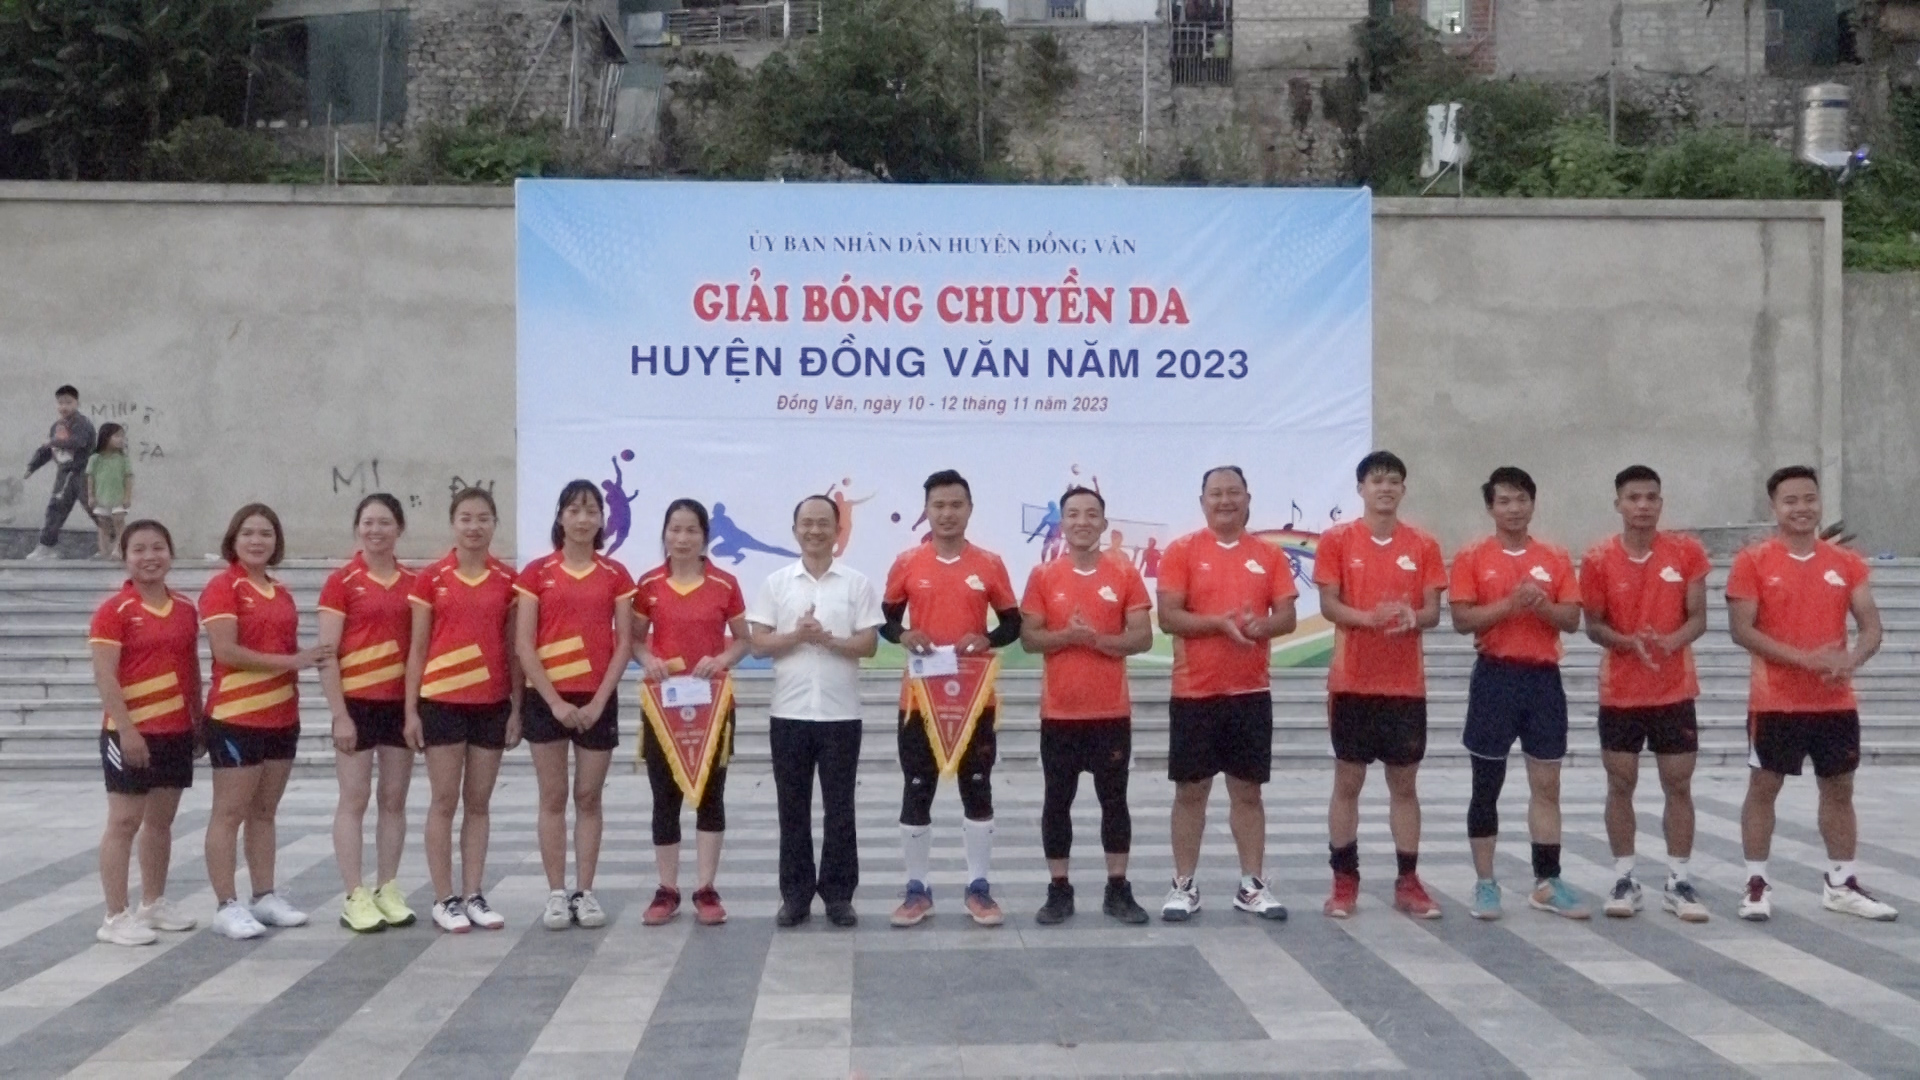 Bế mạc giải bóng chuyền da huyện Đồng Văn năm 2023